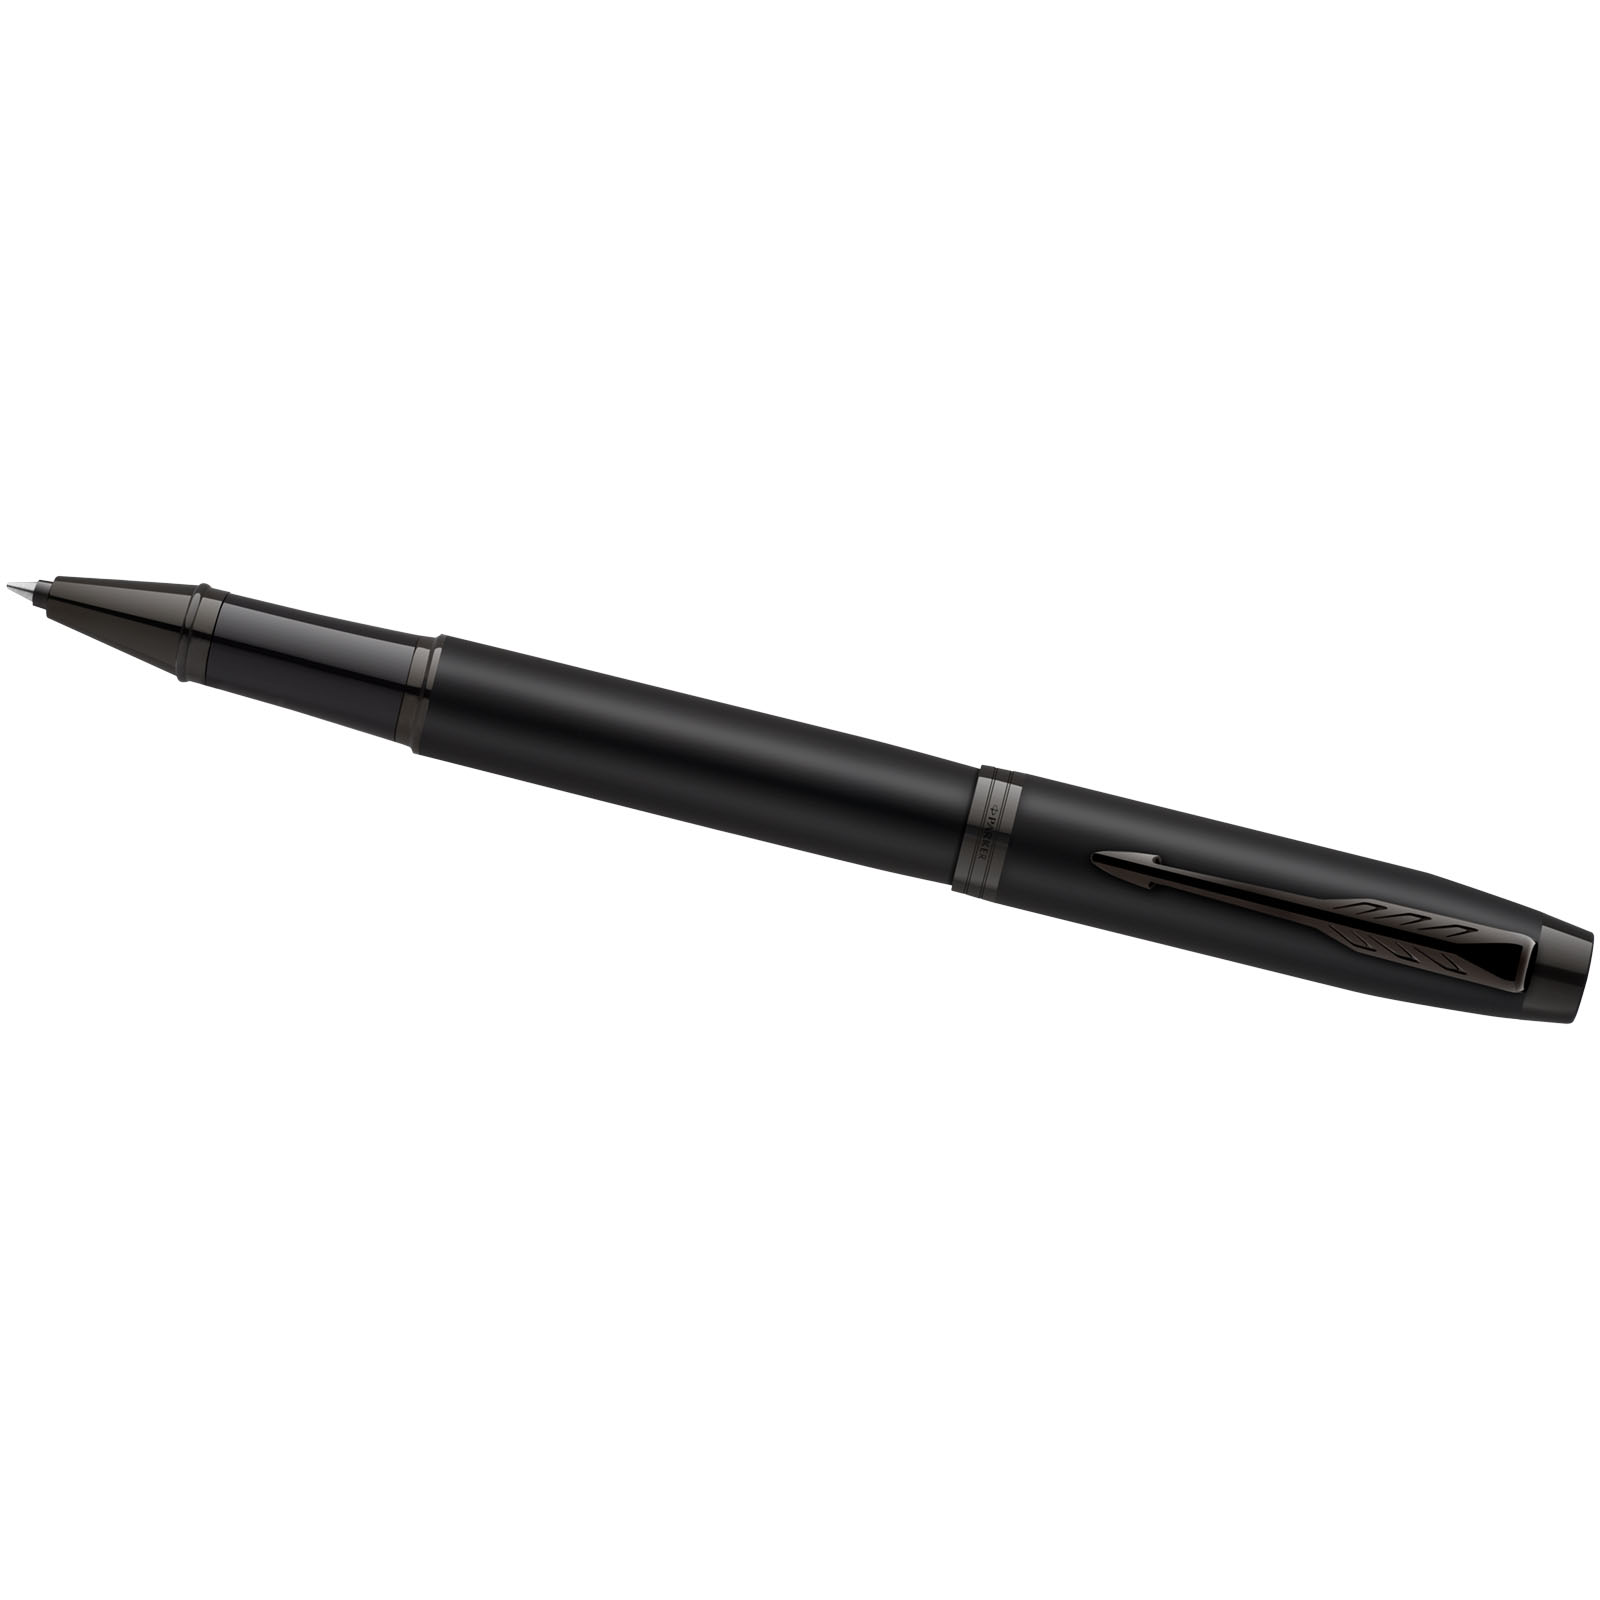 Parure de stylos publicitaires - Parure IM avec stylo roller et stylo bille achromatiques Parker - 5